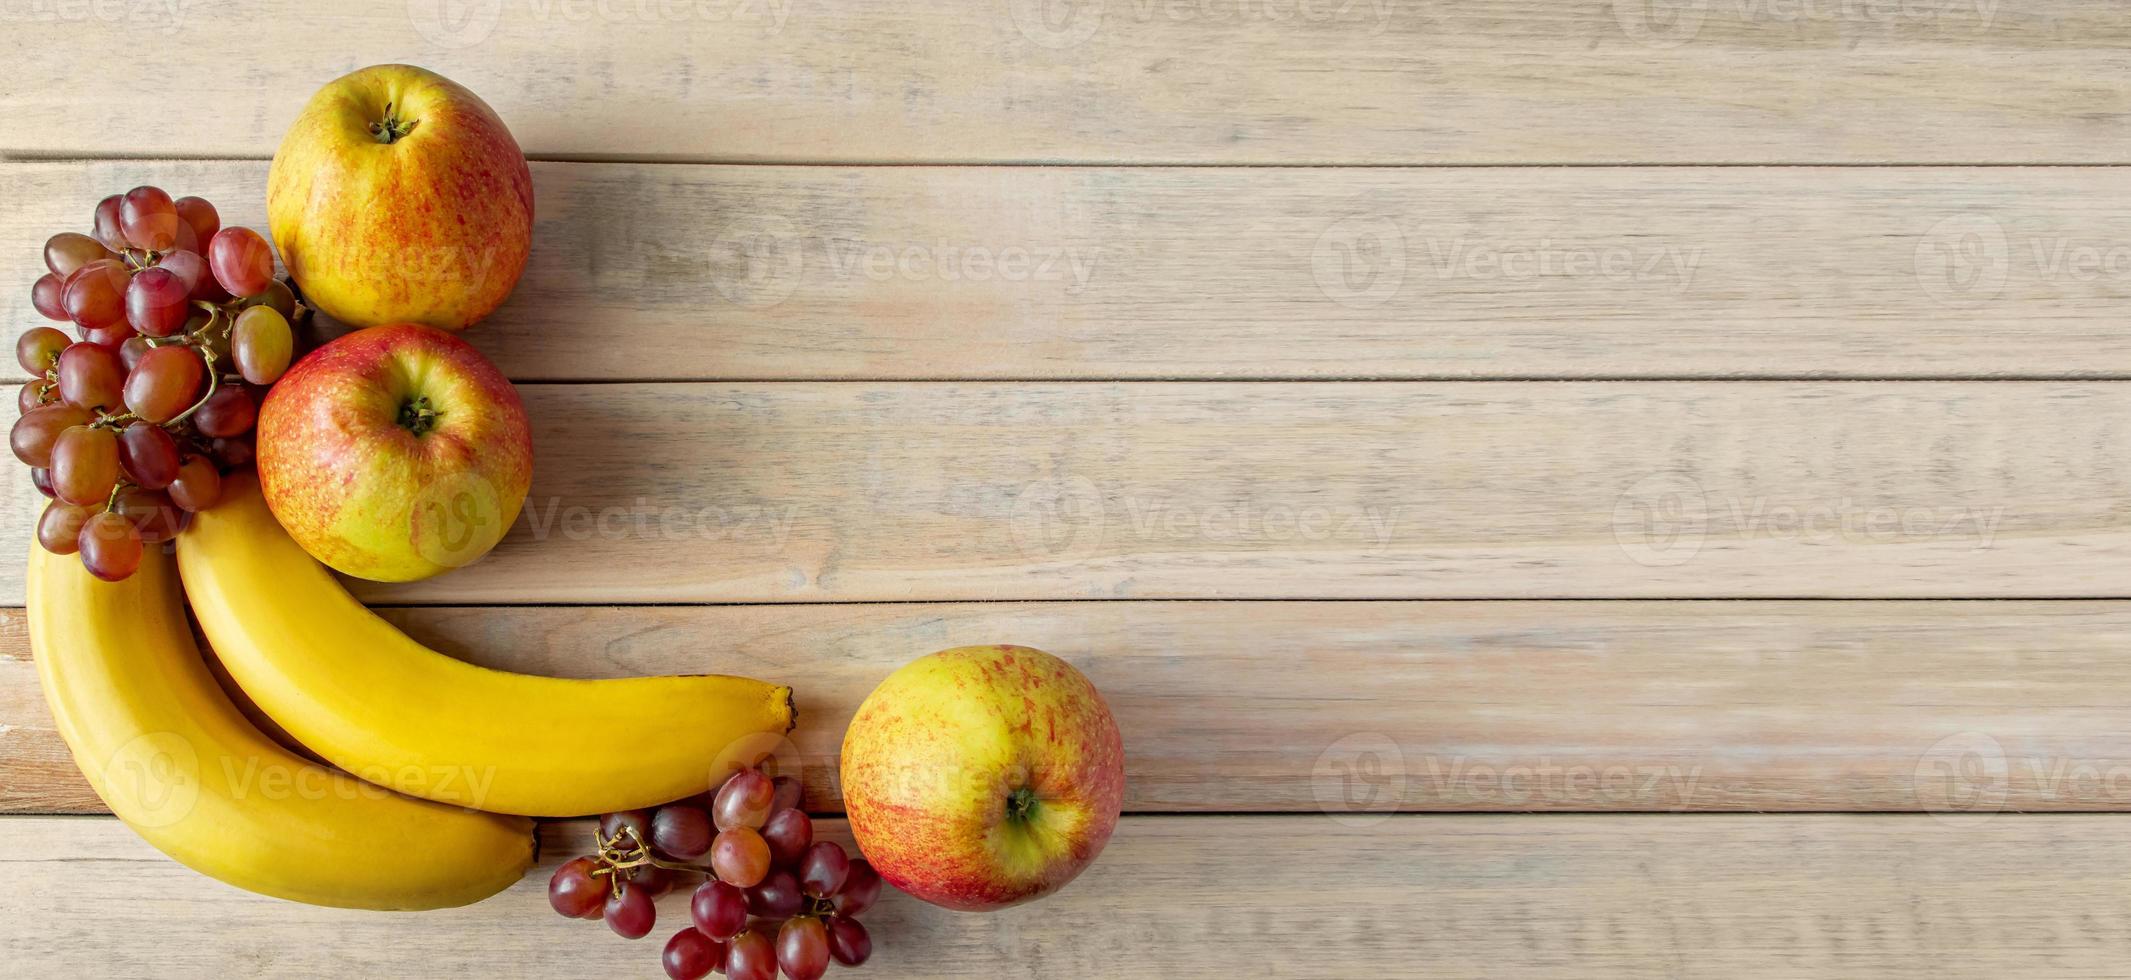 rijp fruit op houten achtergrond. bananen, appels en druiven. oogstconcept. foto